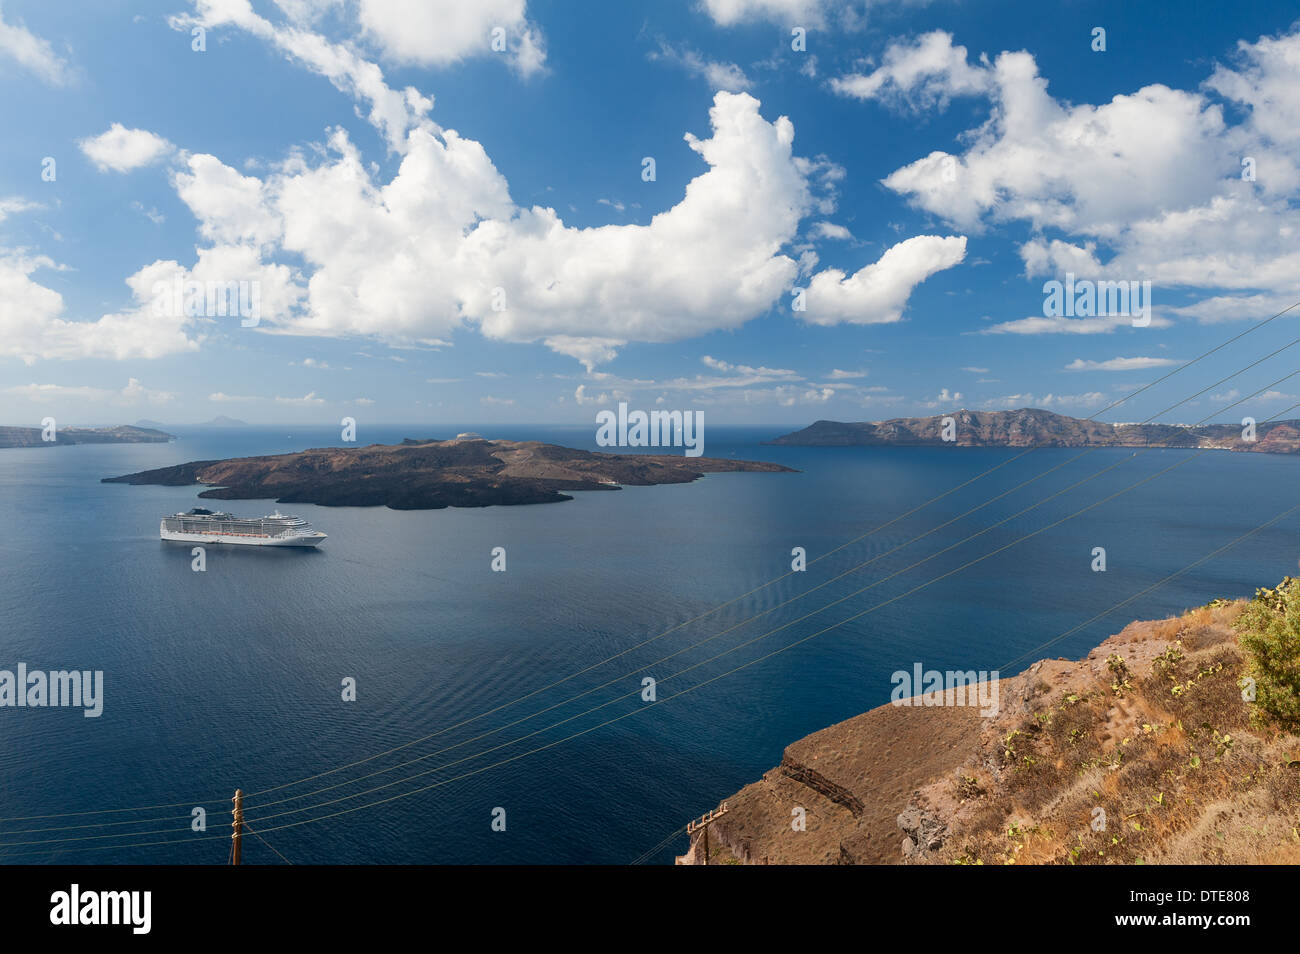 Bateau de croisière au large de la côte de Santorini Grèce Banque D'Images